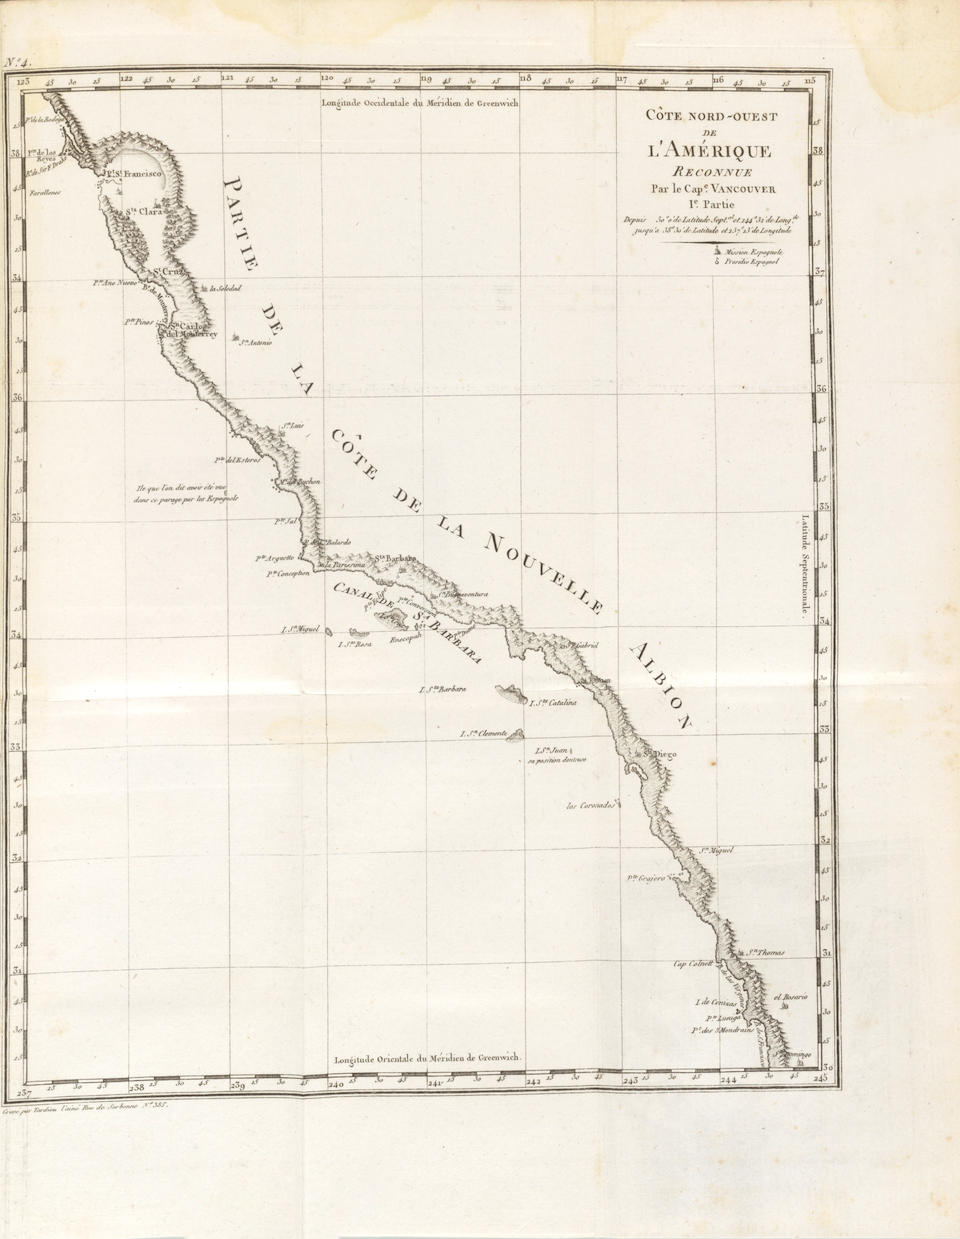 VANCOUVER, GEORGE. 1757-1798. Voyage de Decouvertes, a l'Ocean Pacifique du Nord, et Autour du M...